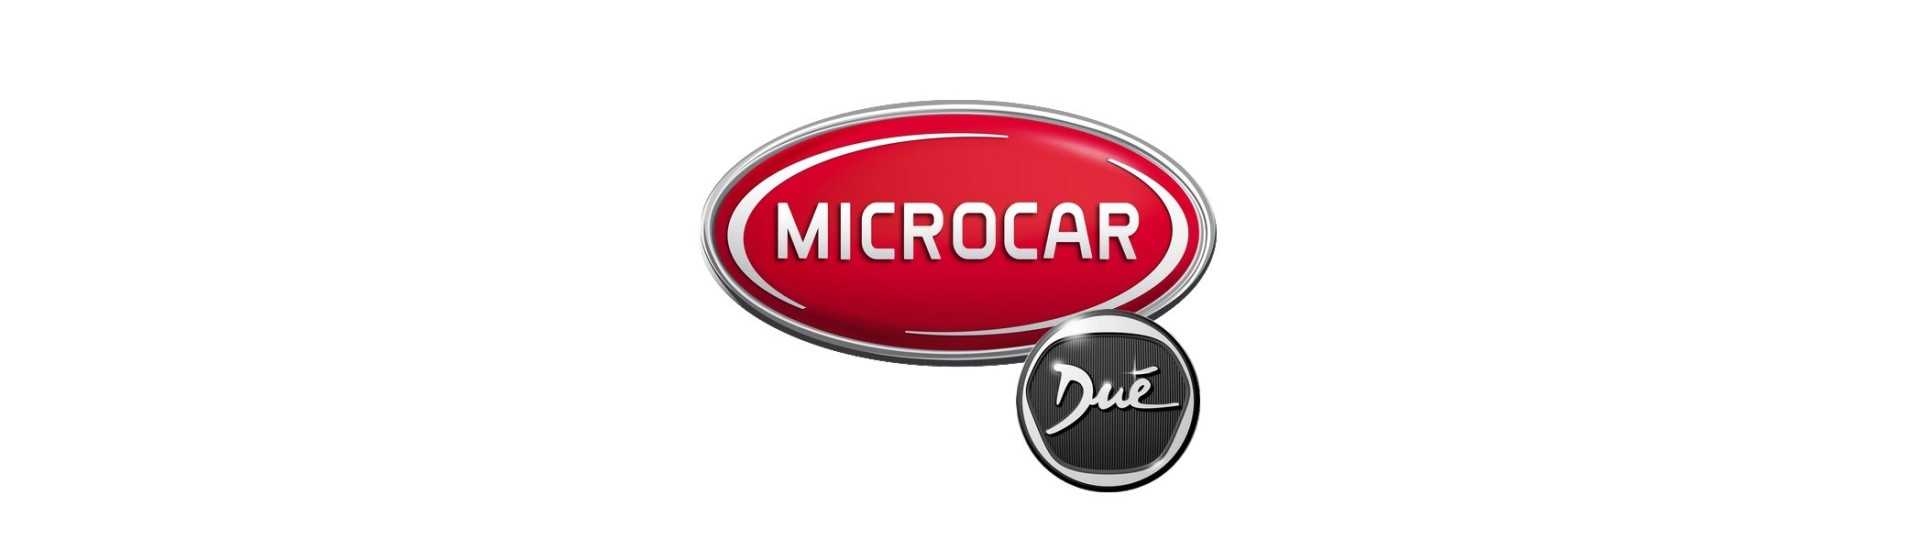 Luftkonditioneringsfilter till bästa prisbil utan tillstånd Microcar